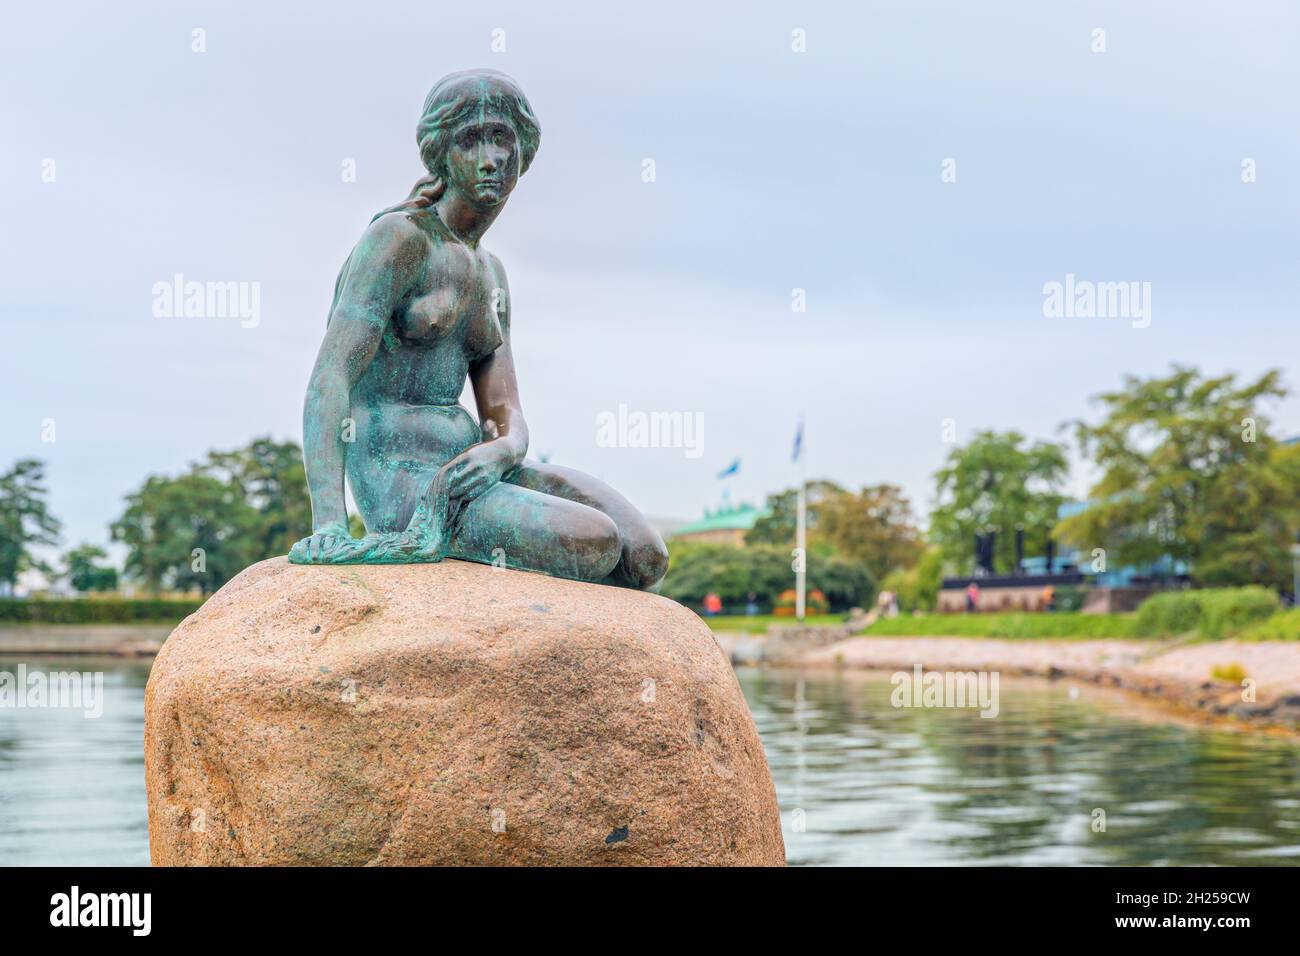 Copenhague, Danemark, 21 septembre 2021 : la petite Sirène, statue d'Edvard Eriksen sur un rocher dans l'eau, sur la promenade Langelinie Banque D'Images